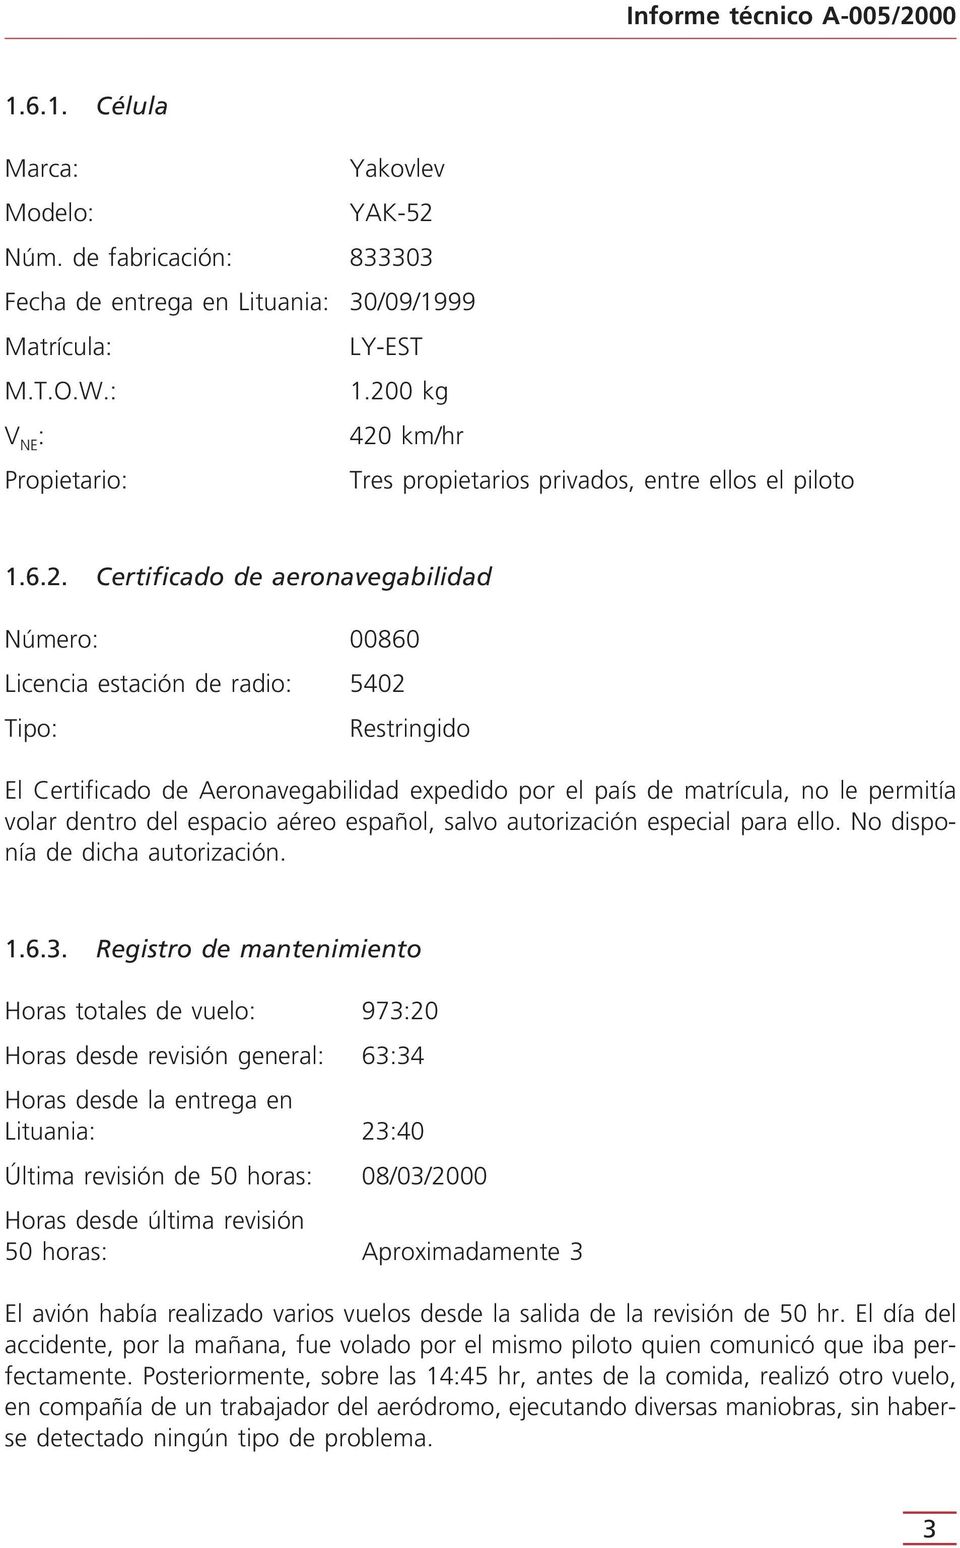 Certificado de Aeronavegabilidad expedido por el país de matrícula, no le permitía volar dentro del espacio aéreo español, salvo autorización especial para ello. No disponía de dicha autorización. 1.